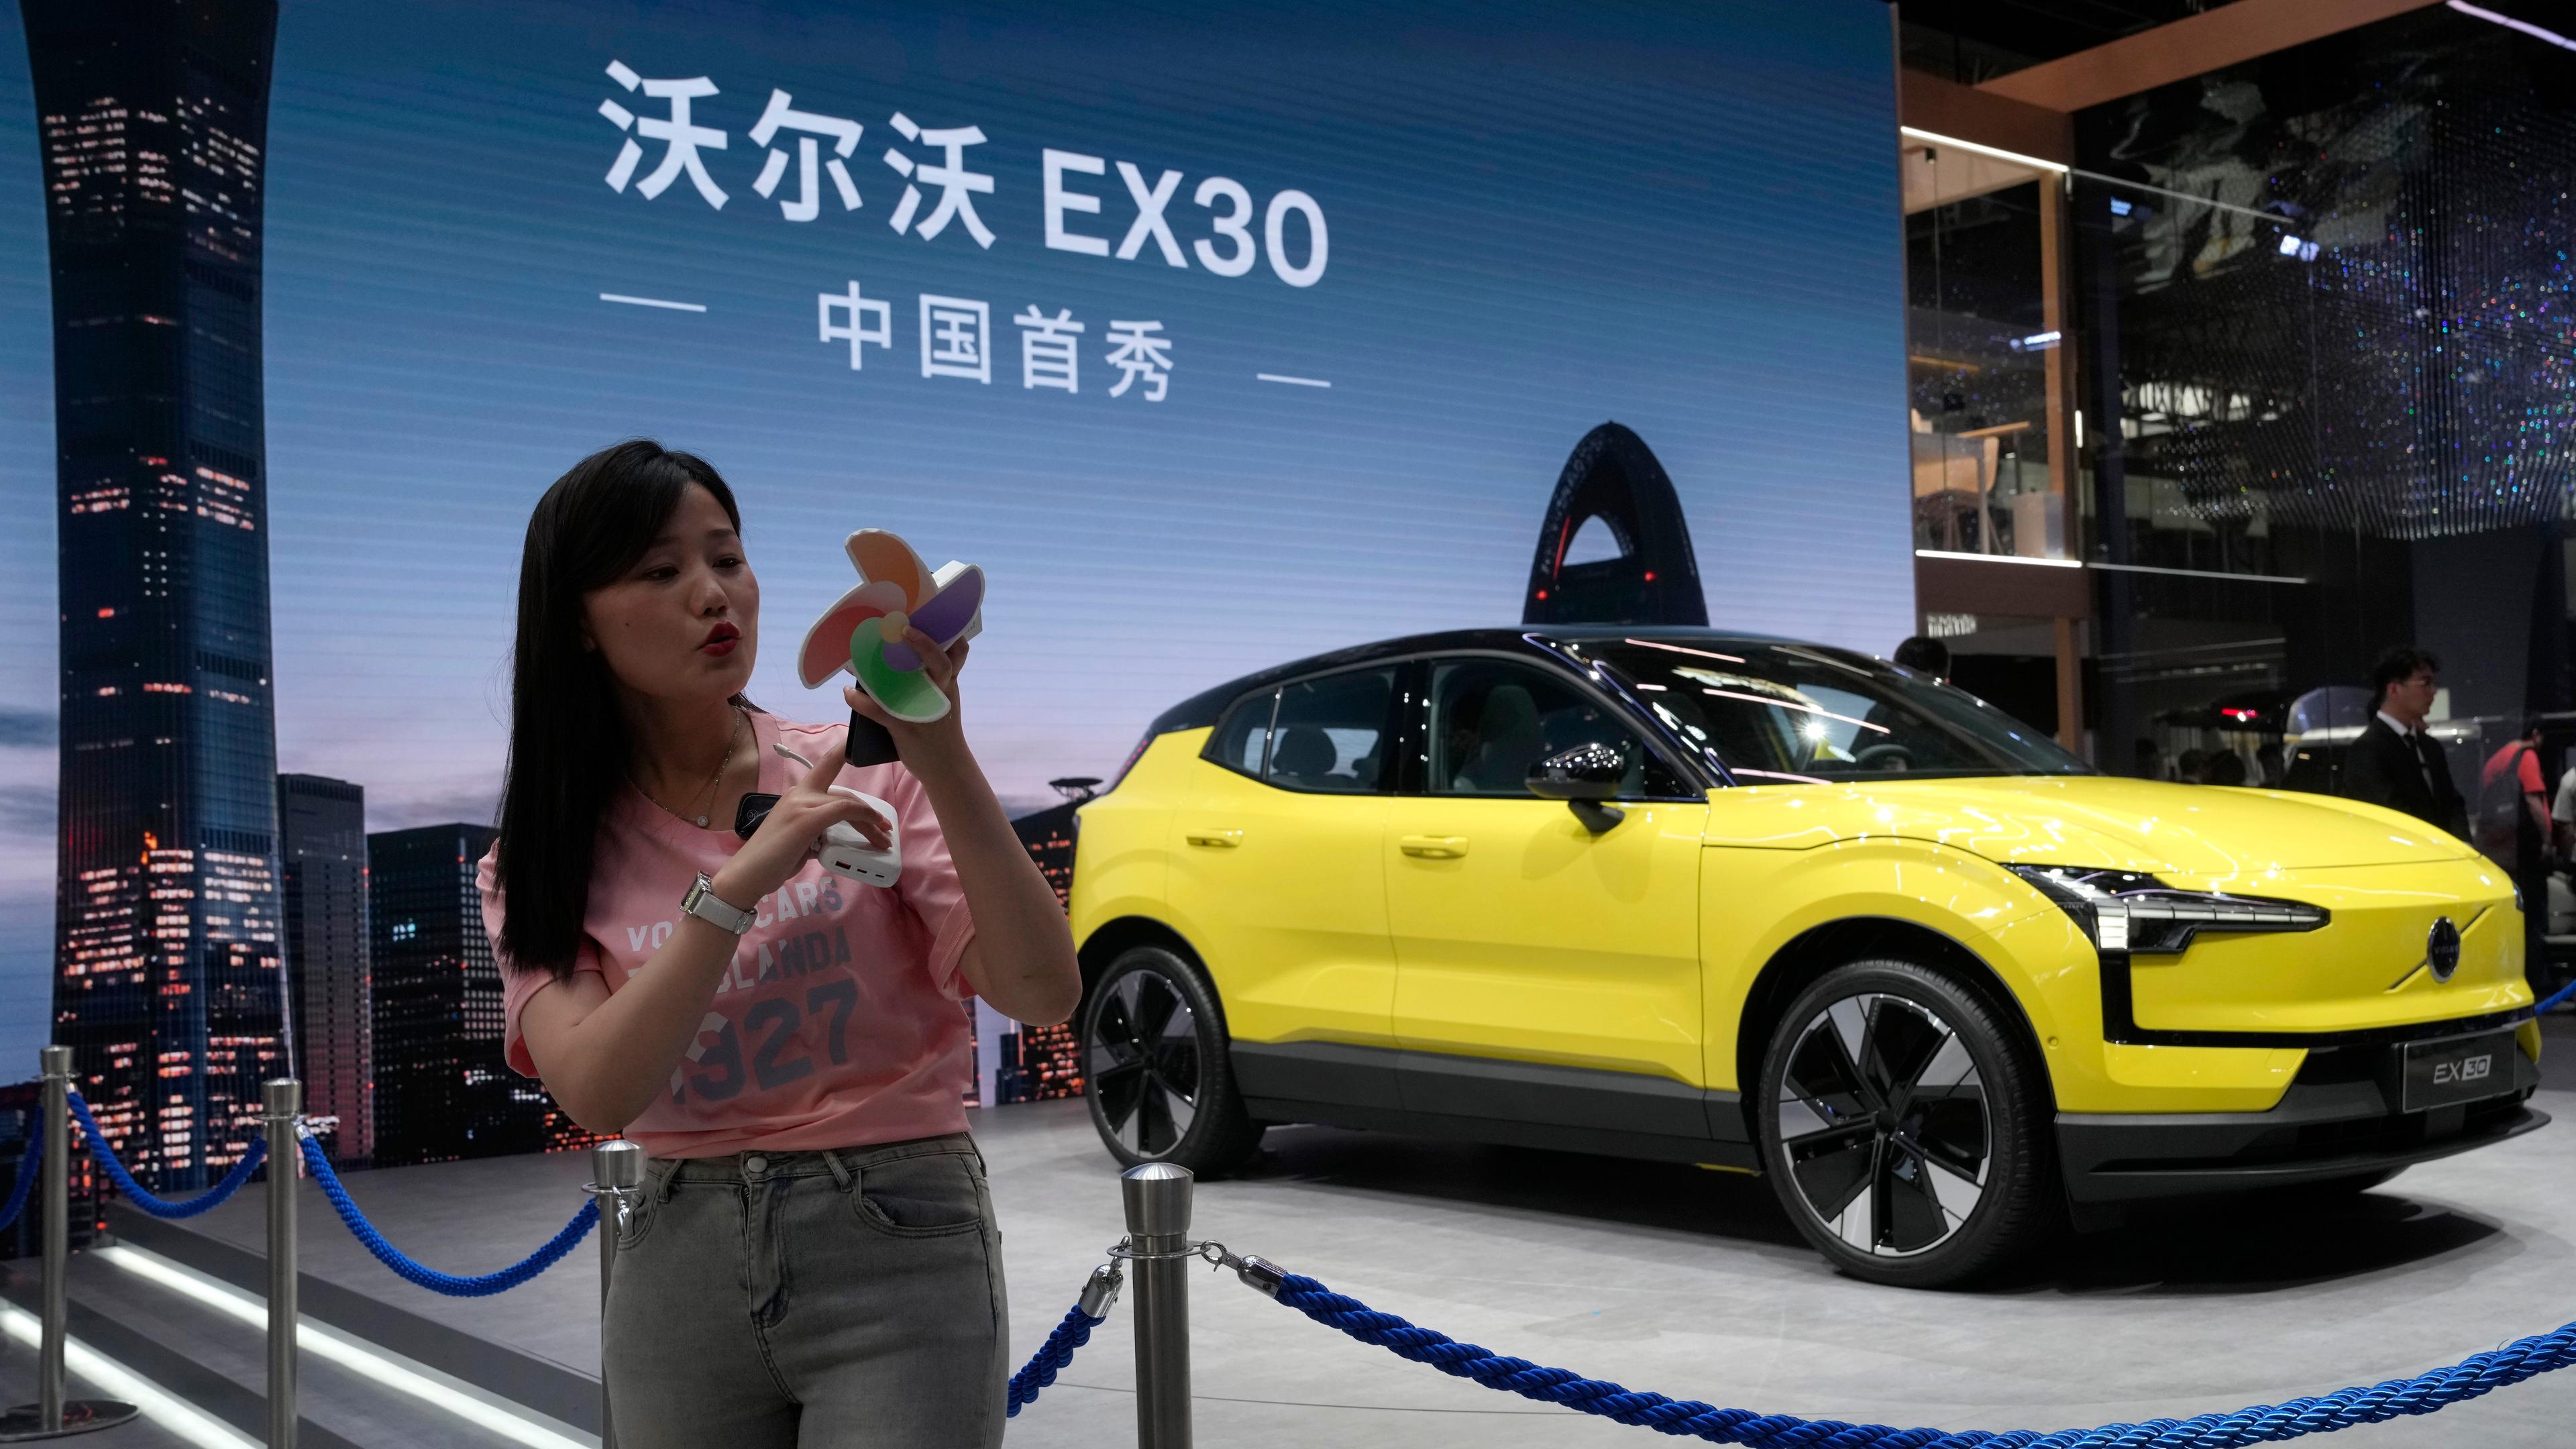 Volvos EX30 uppmärksammades på en bilmässa i Peking i april. Arkivbild. Foto: Ng Han Guan/AP/TT